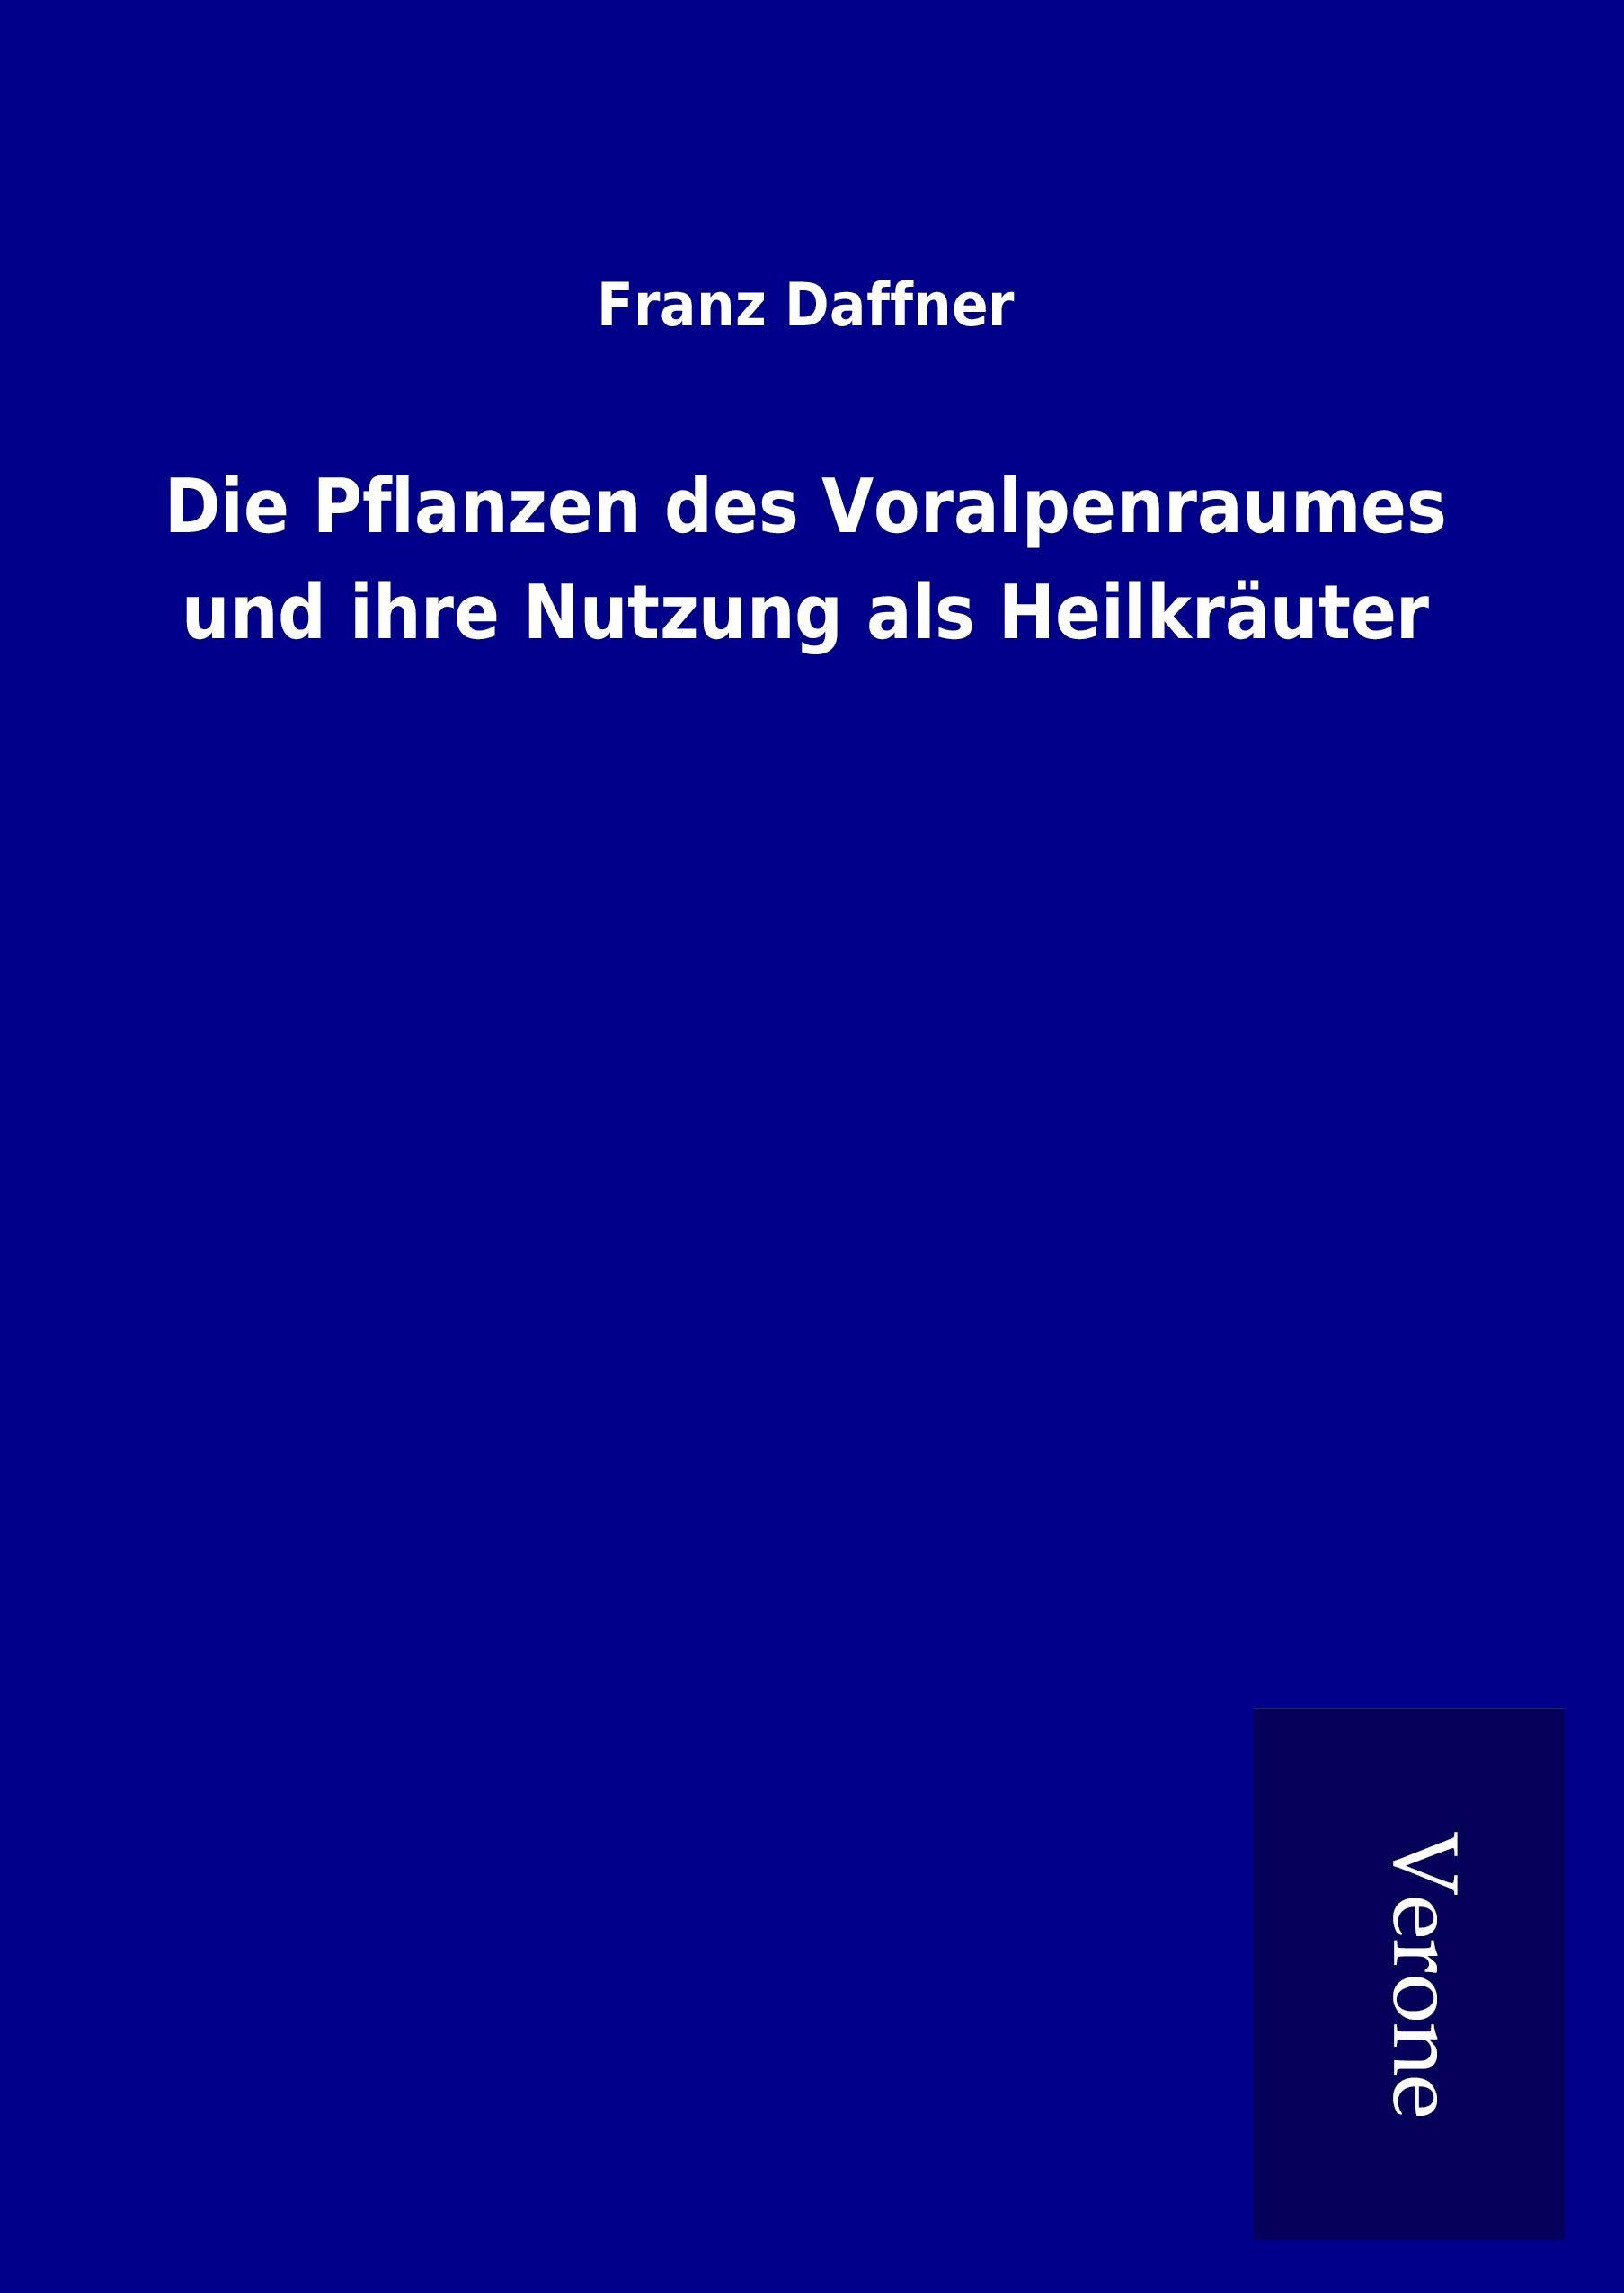 Die Pflanzen des Voralpenraumes und ihre Nutzung als Heilkraeuter - Daffner, Franz